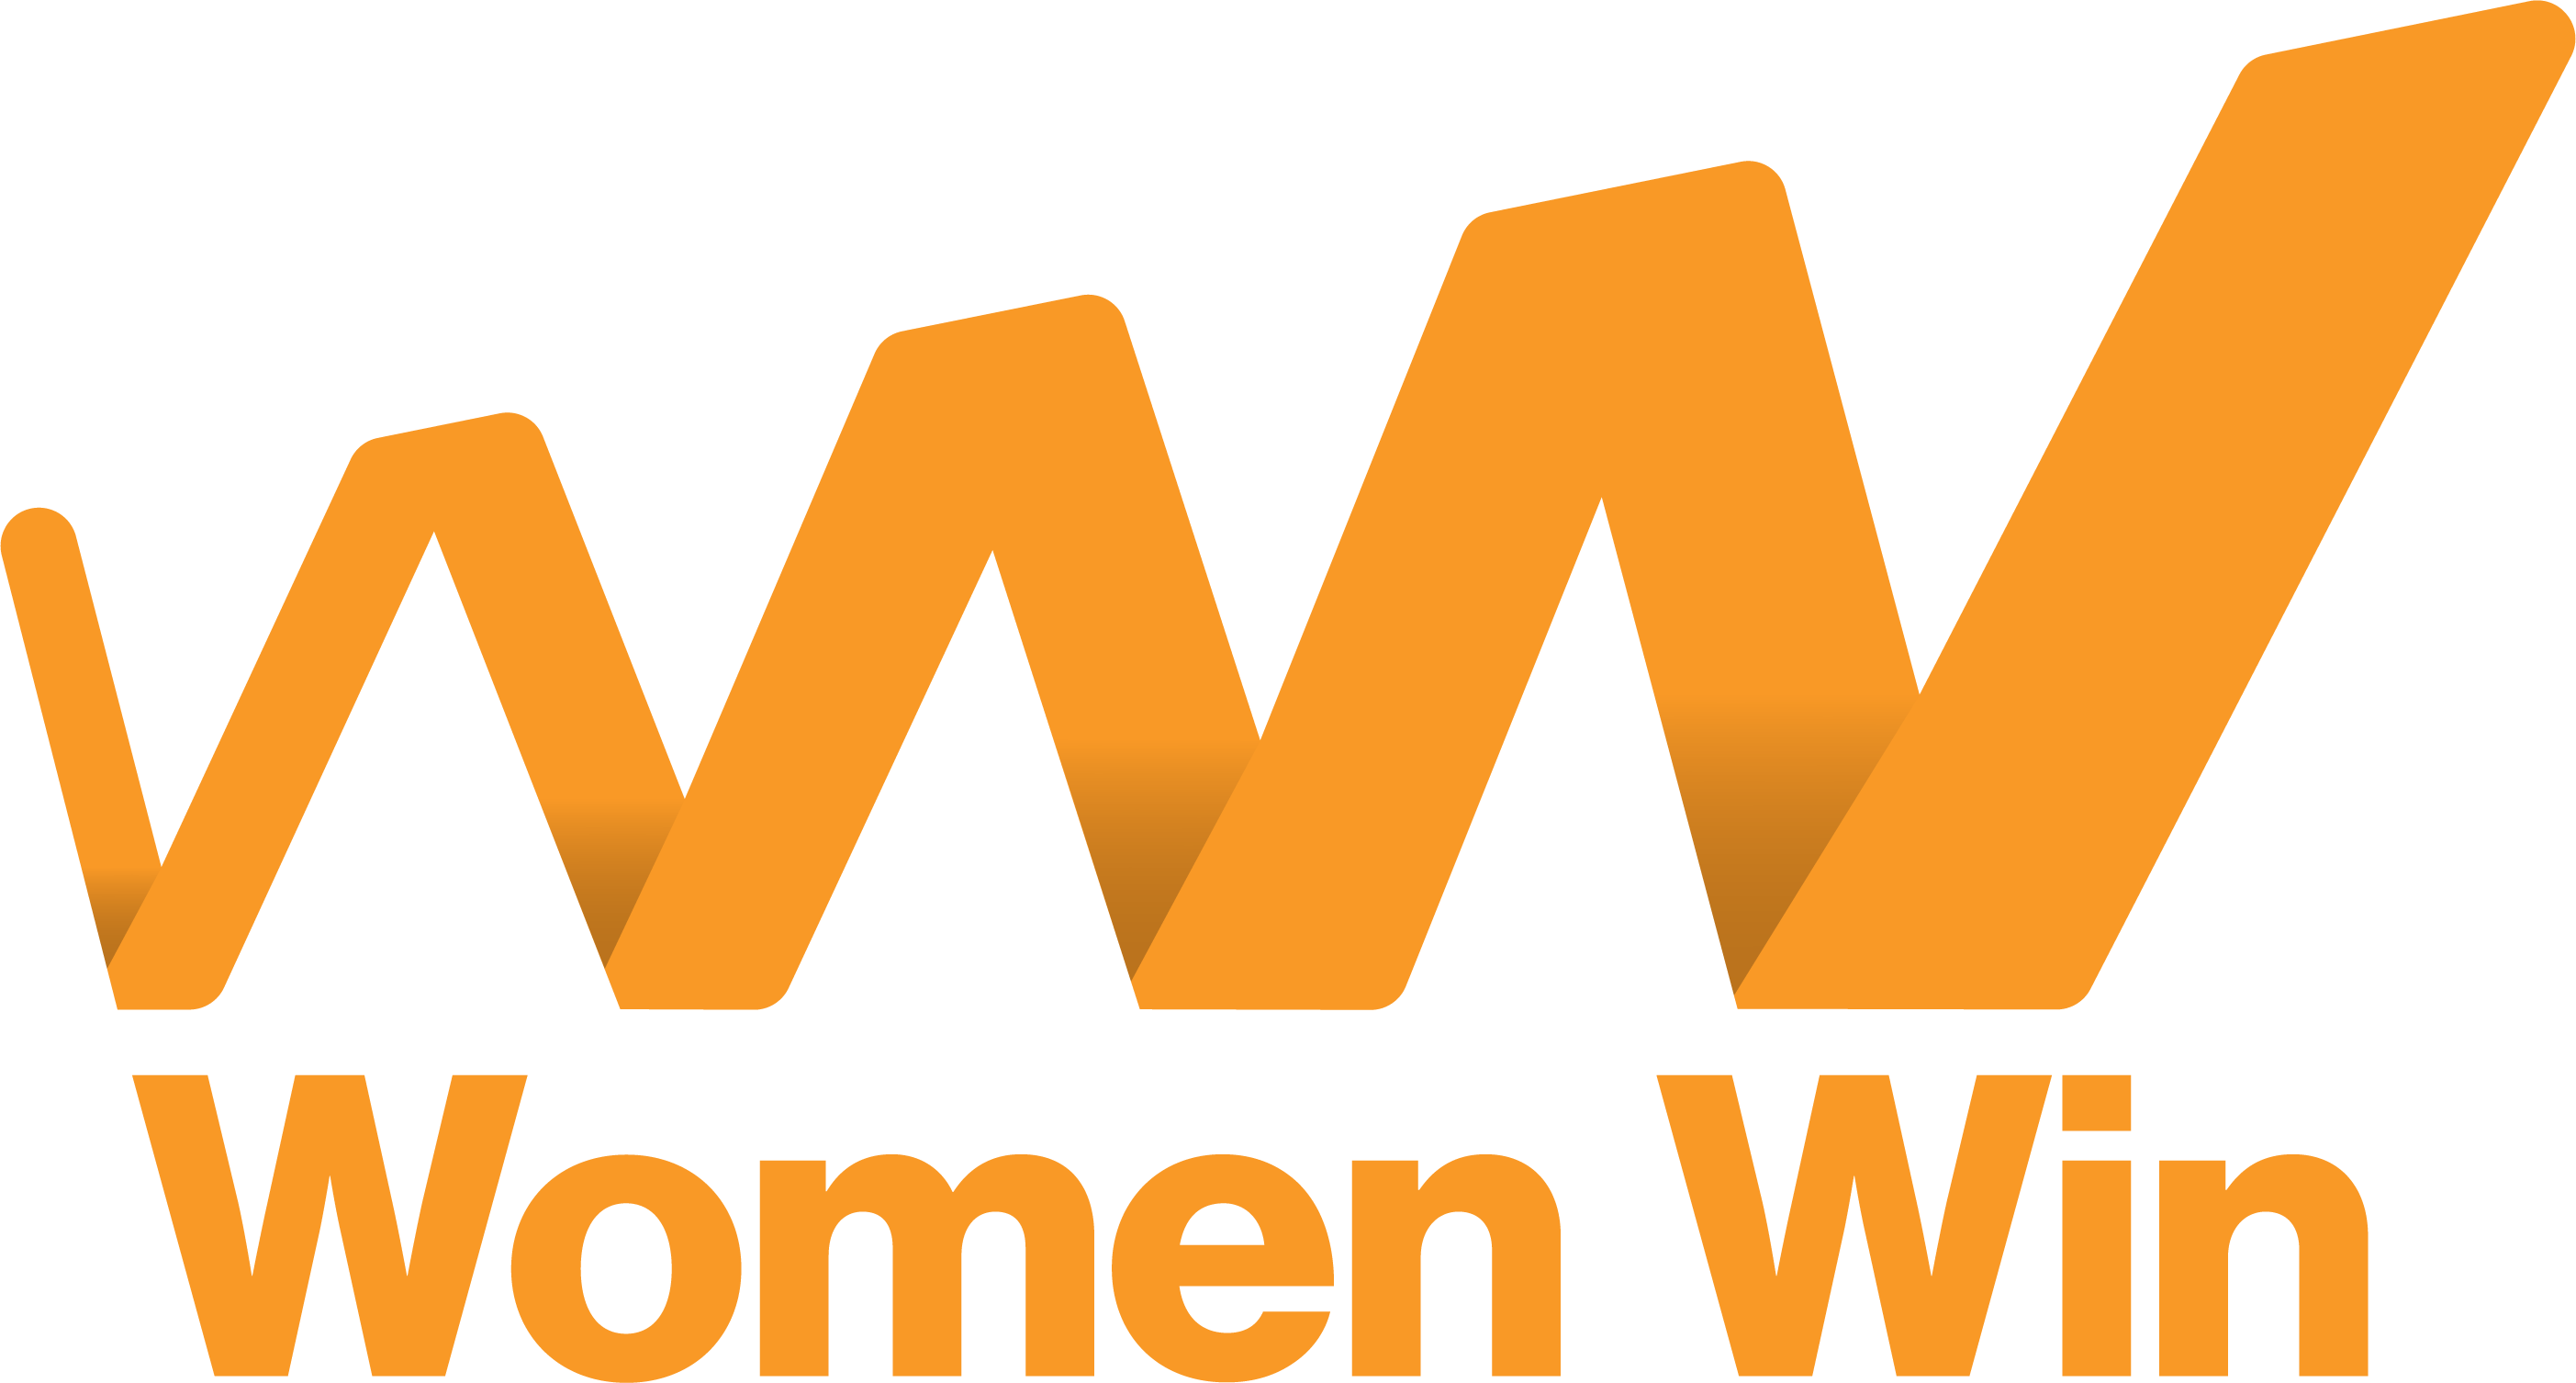 Women Win logo